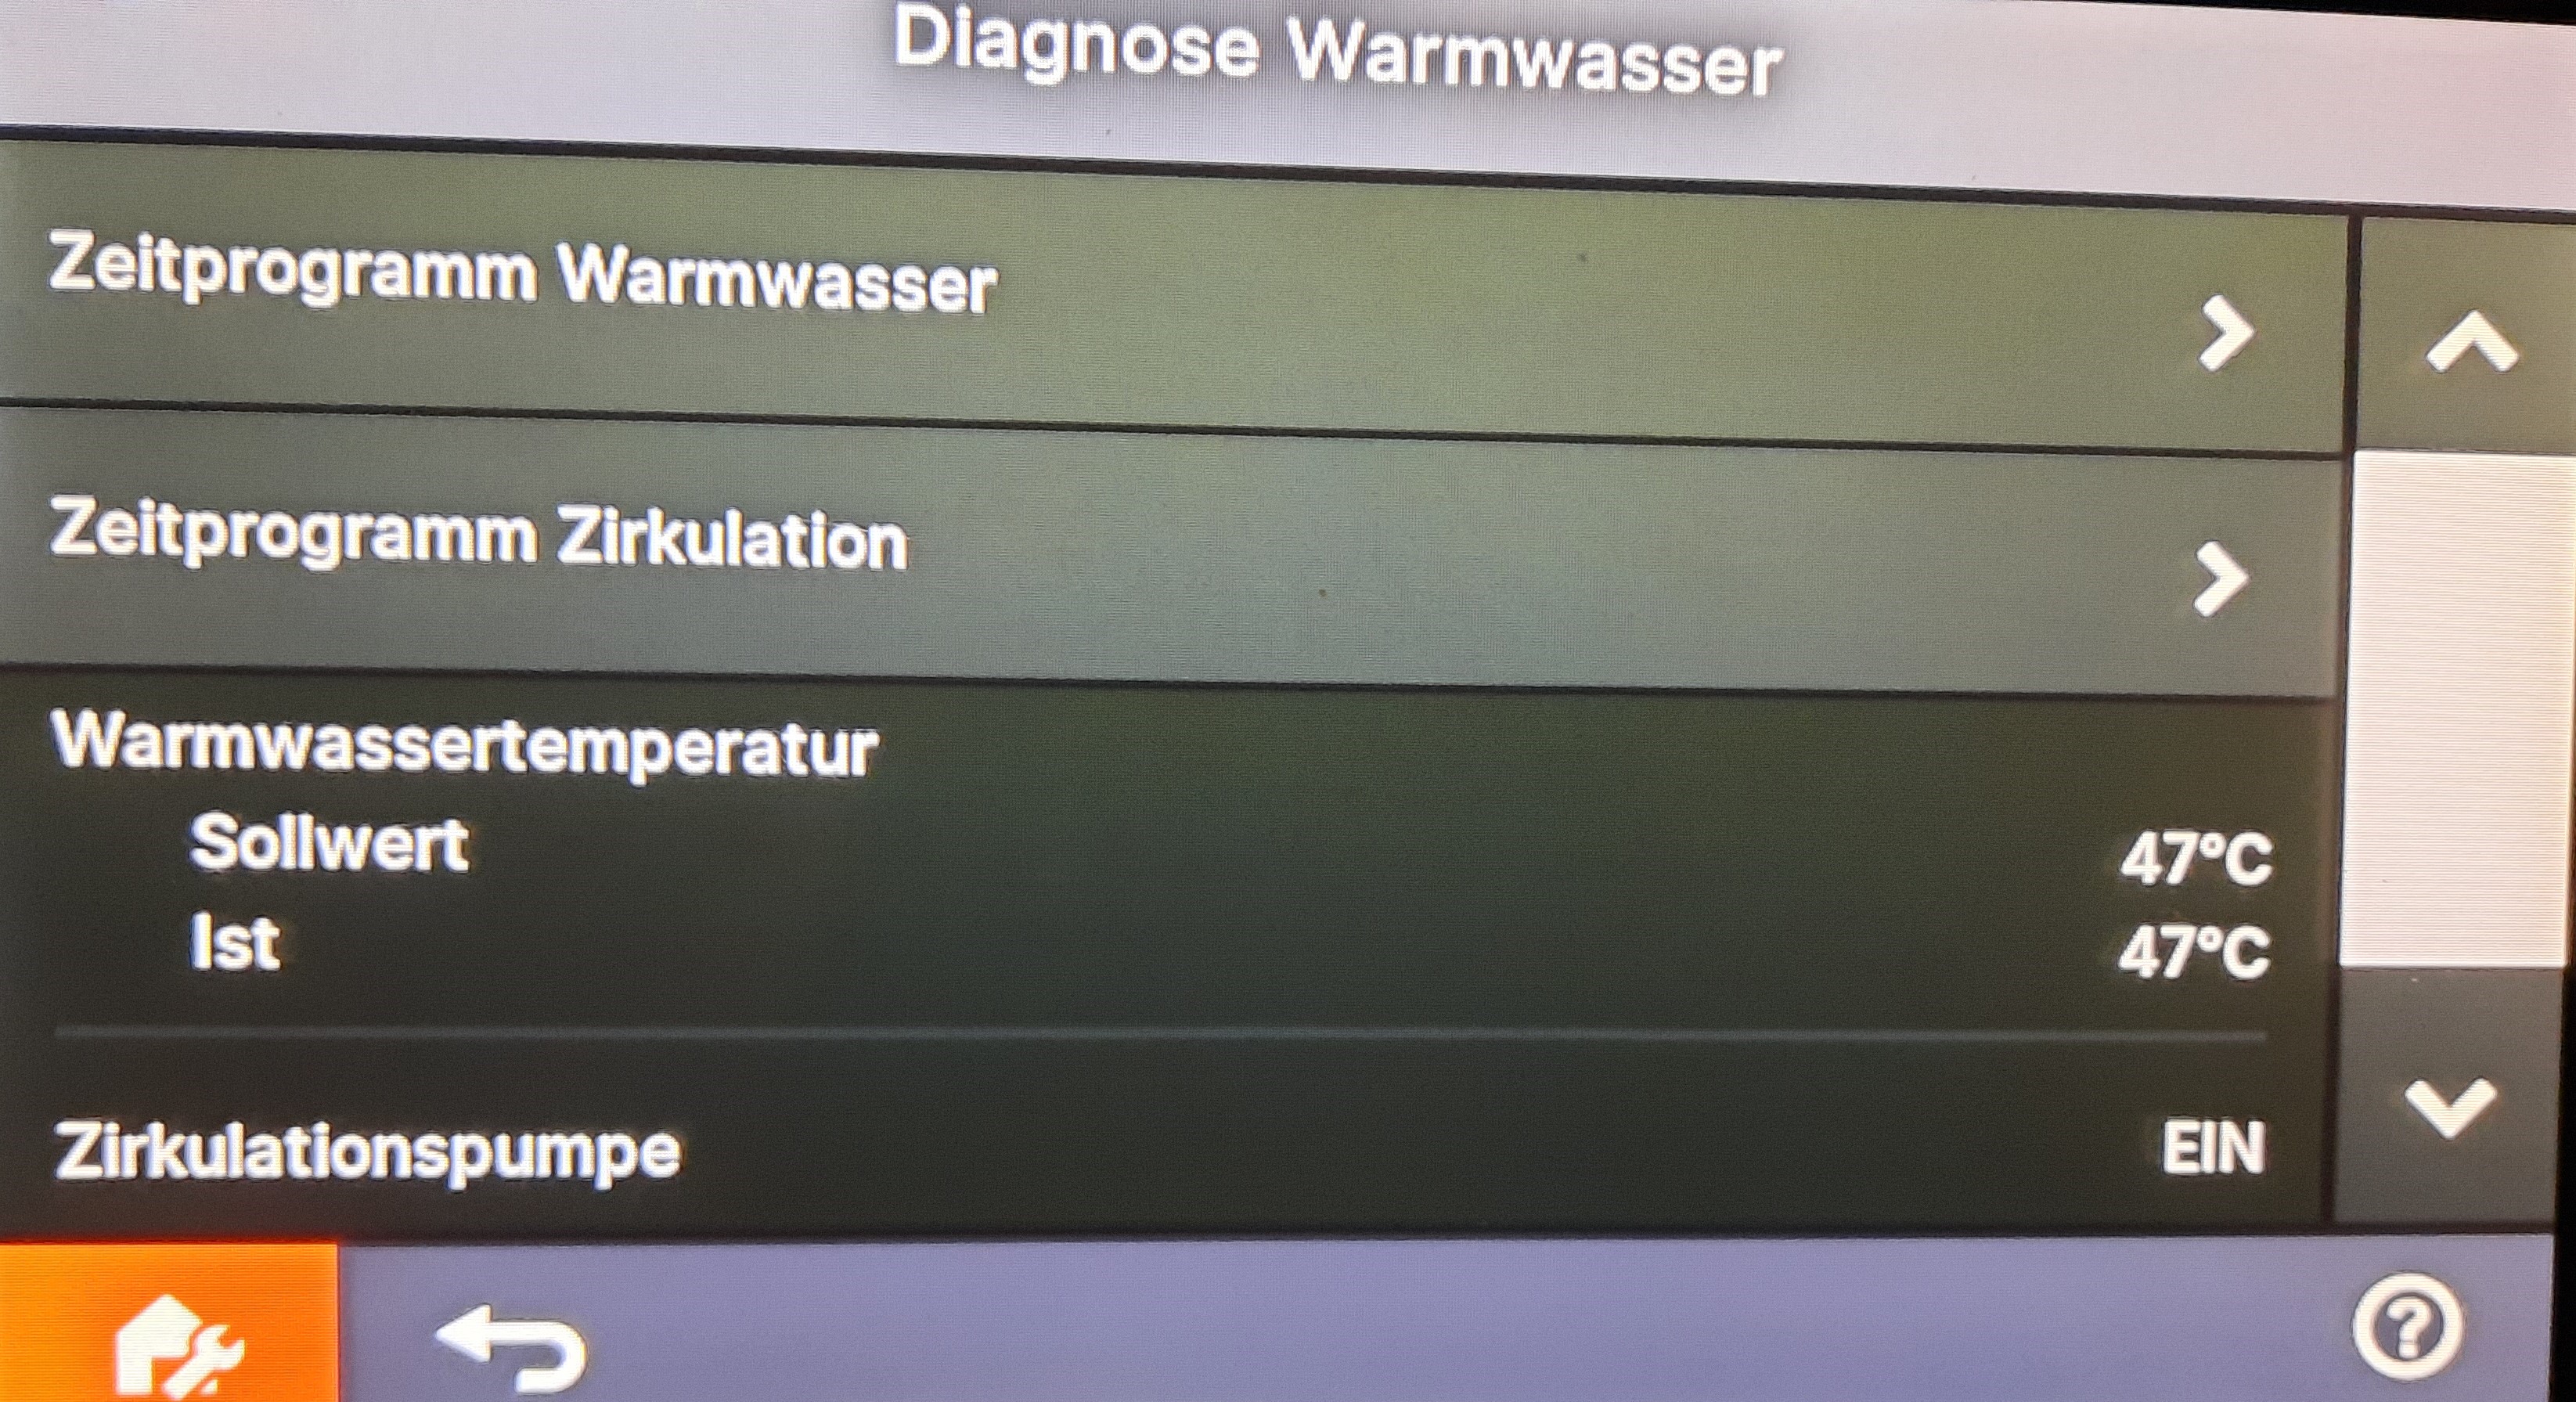 5_Display_Diagnose_Warmwasser.jpg